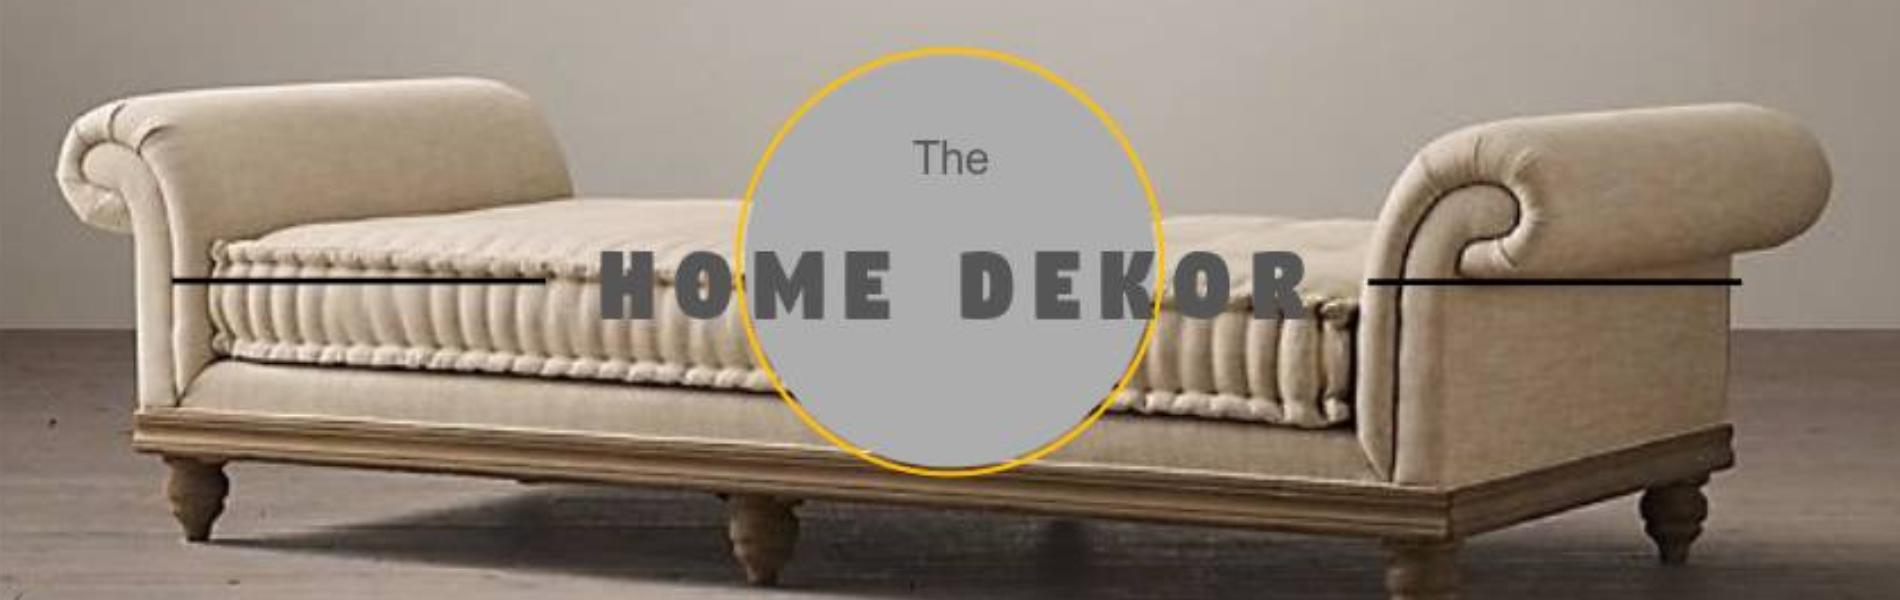 The Home Dekor